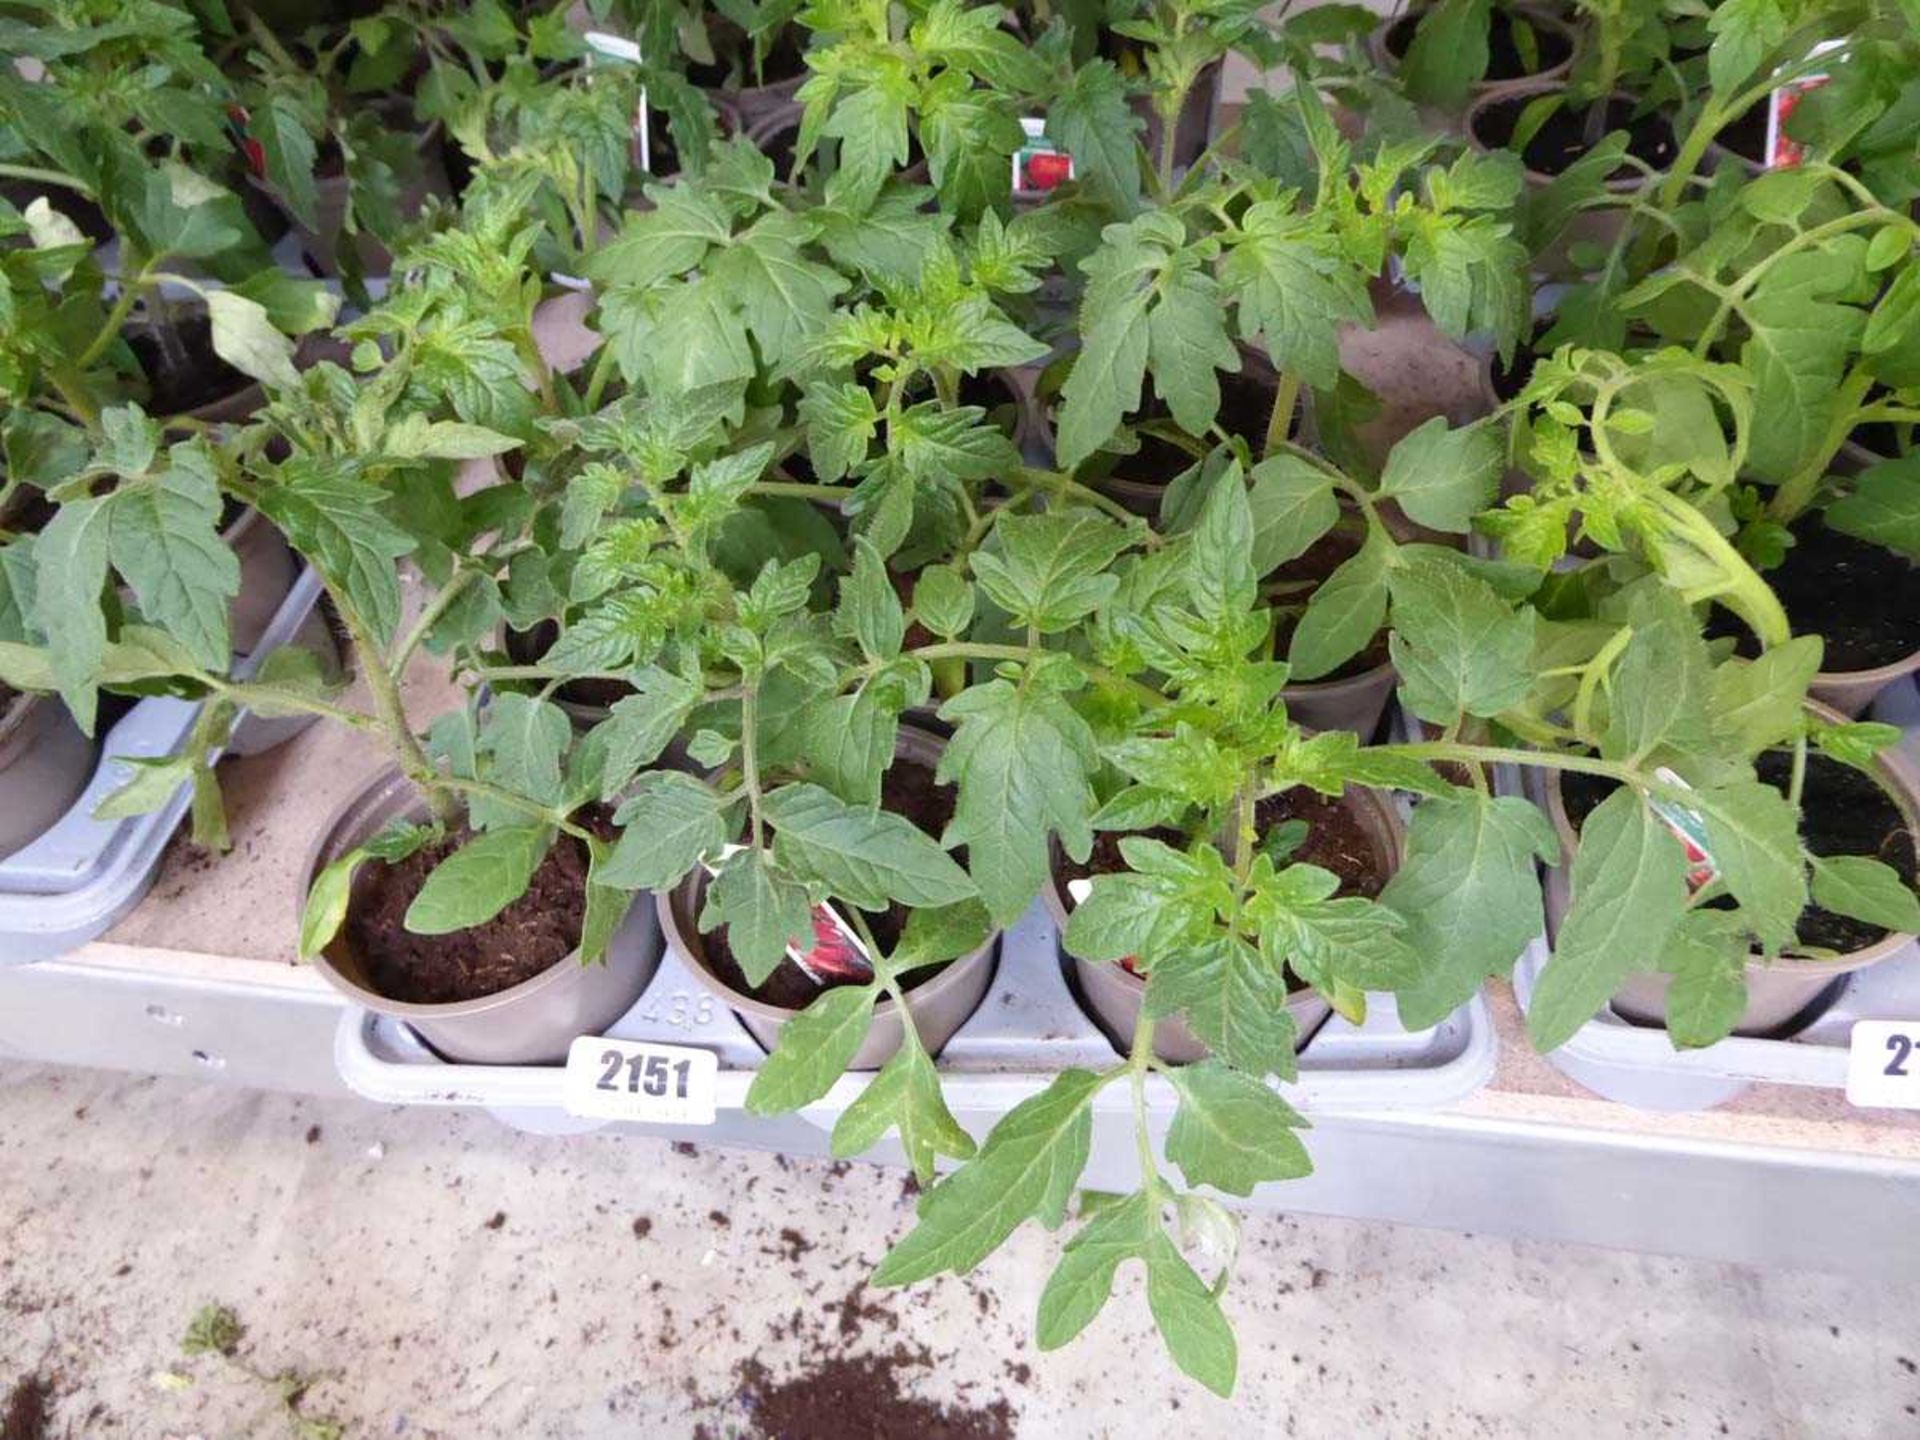 Tray containing 9 pots of mixed variety tomato plants